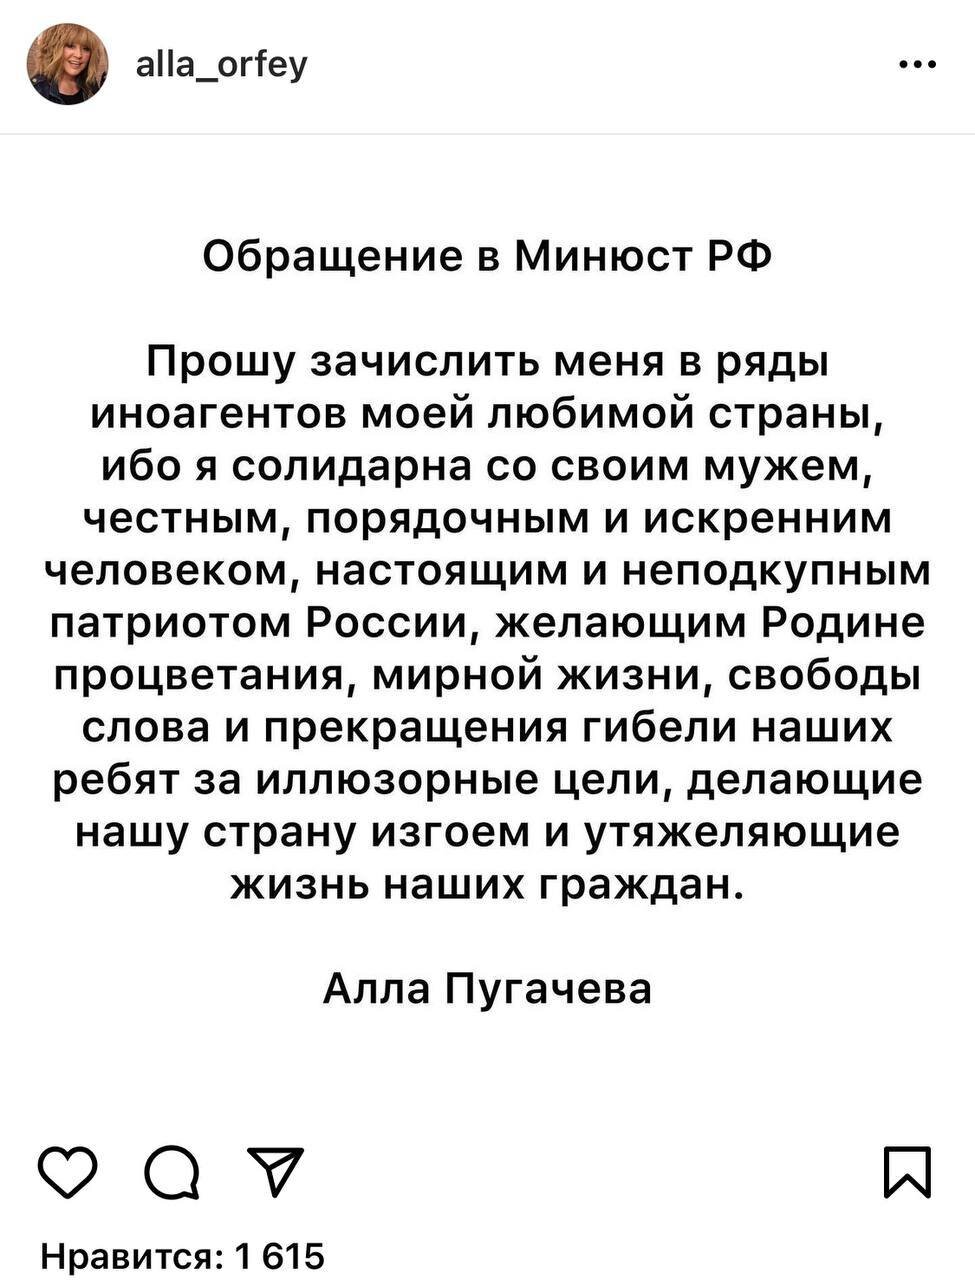 «Настоящий неподкупный патриот»: Алла Пугачева эмоционально обратилась к Минюсту РФ